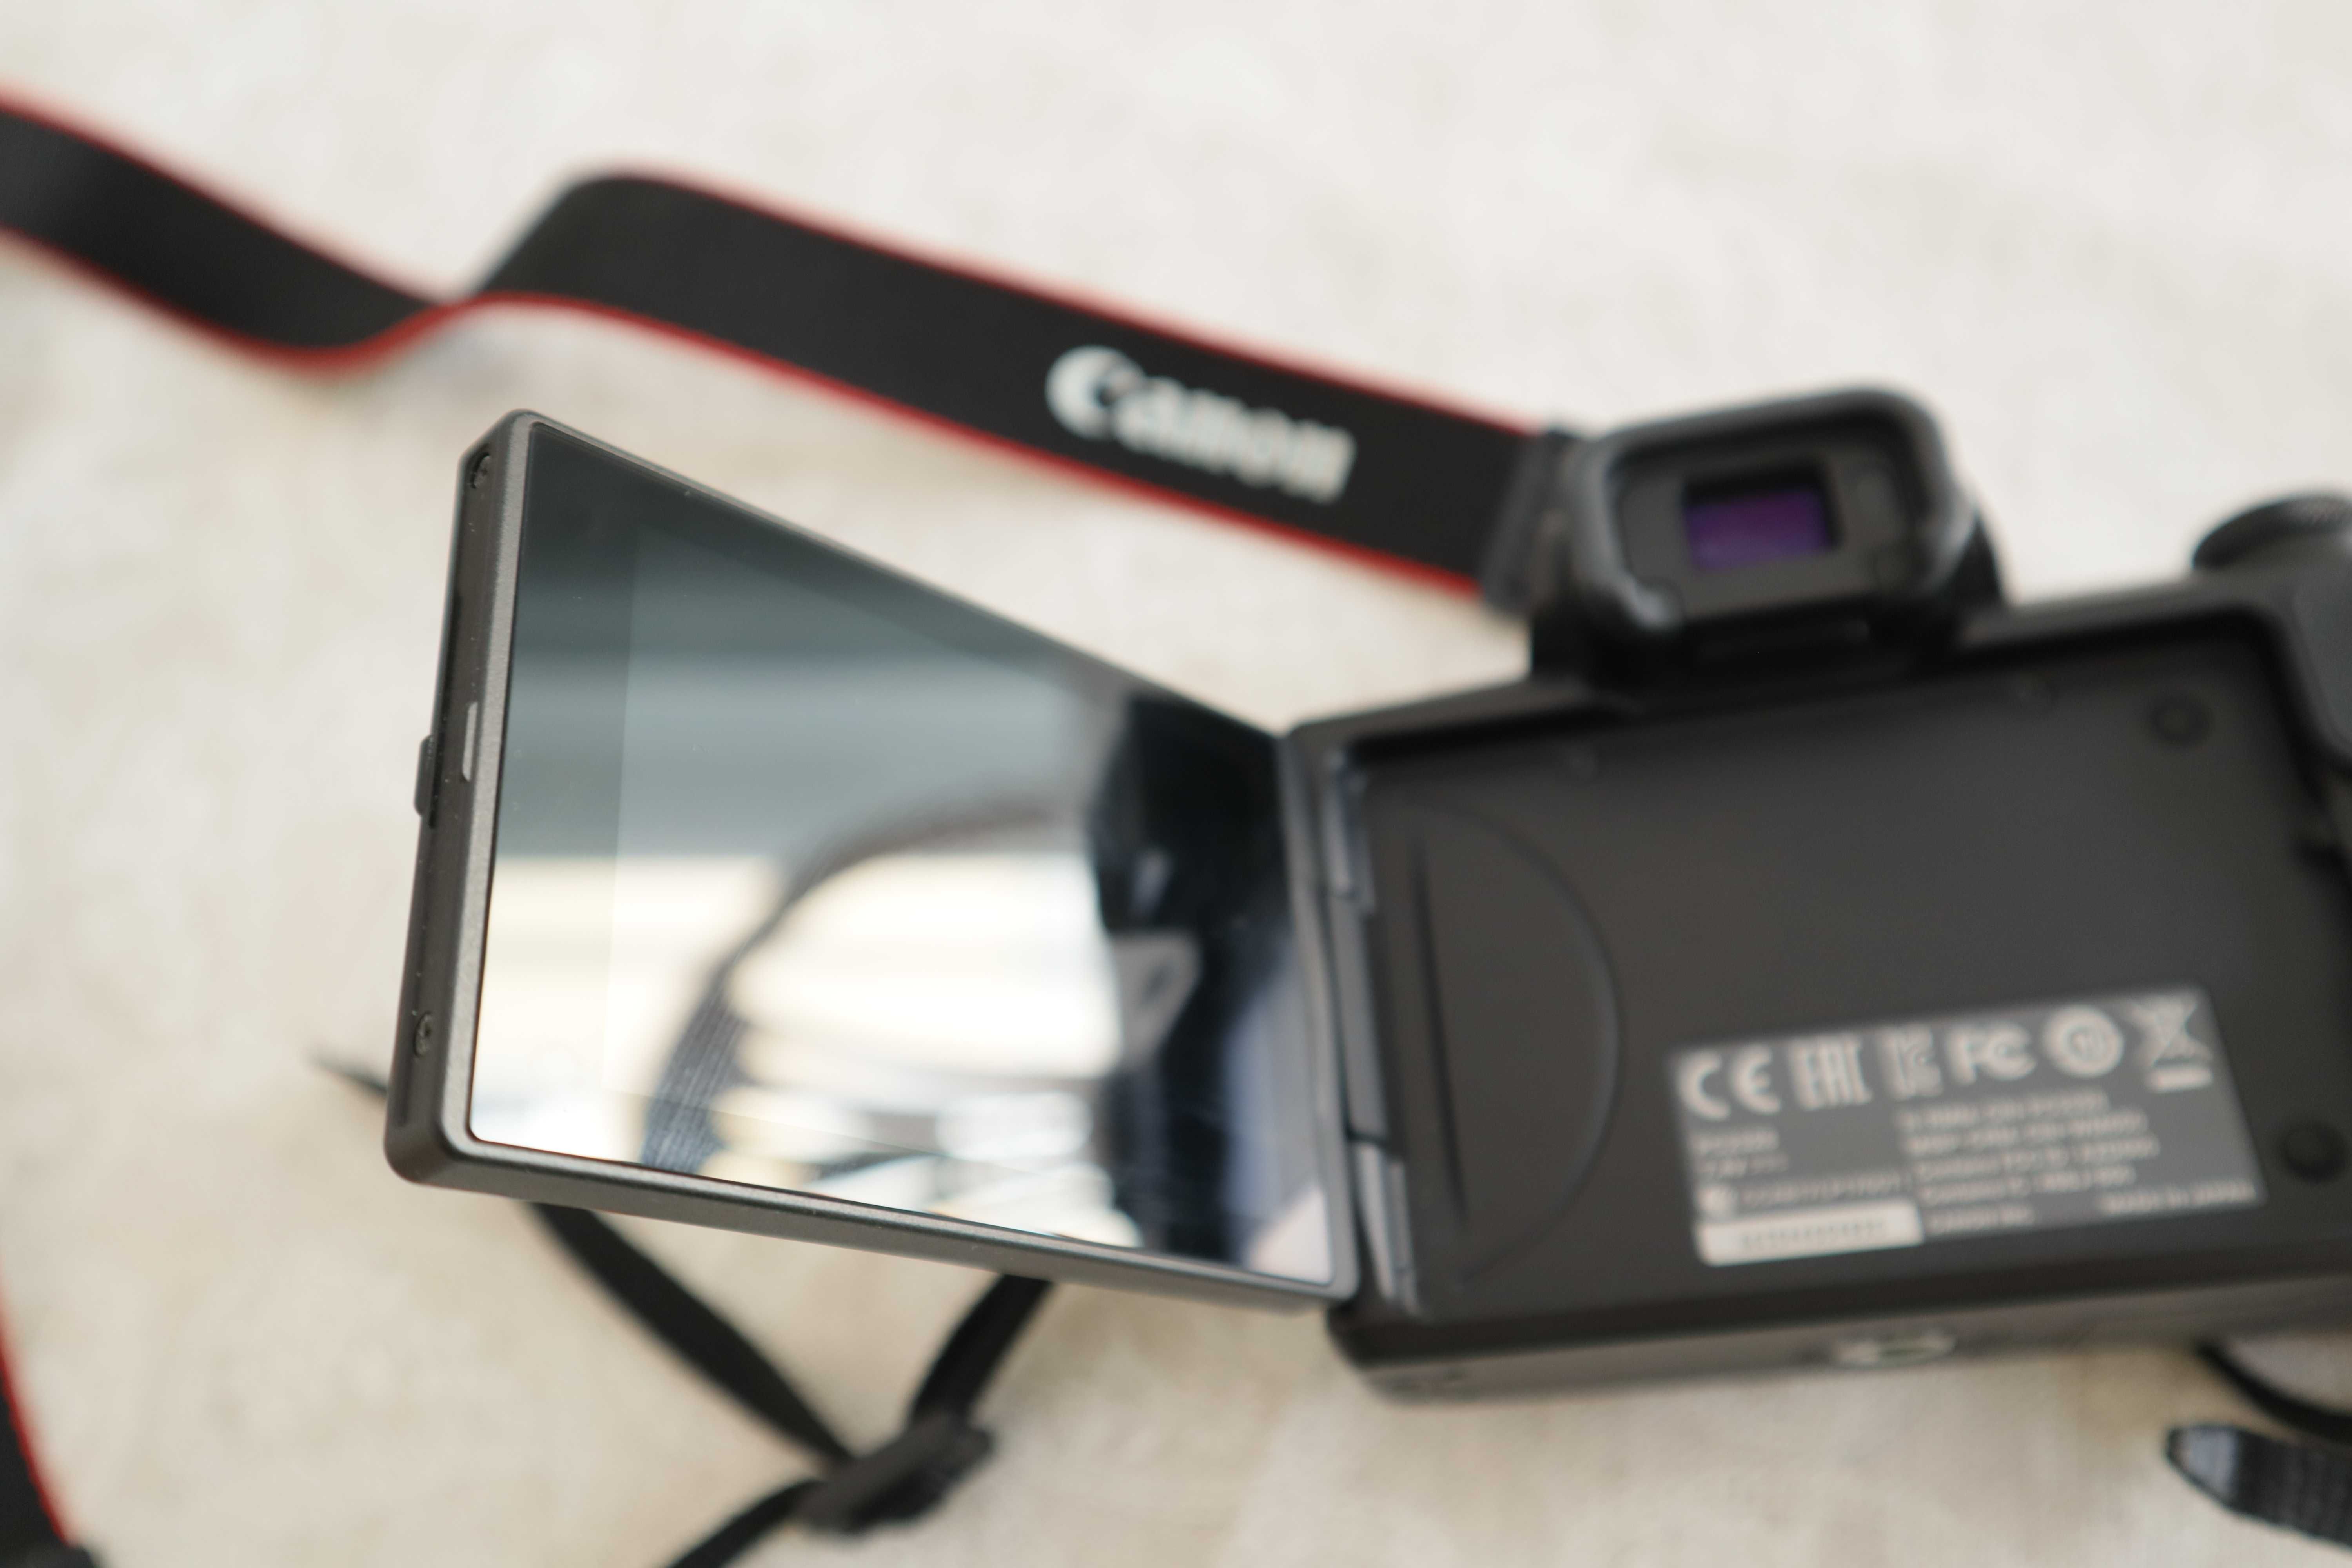 Máquina fotográfica Canon EOS M50 com Objetiva 15-45 mm de origem